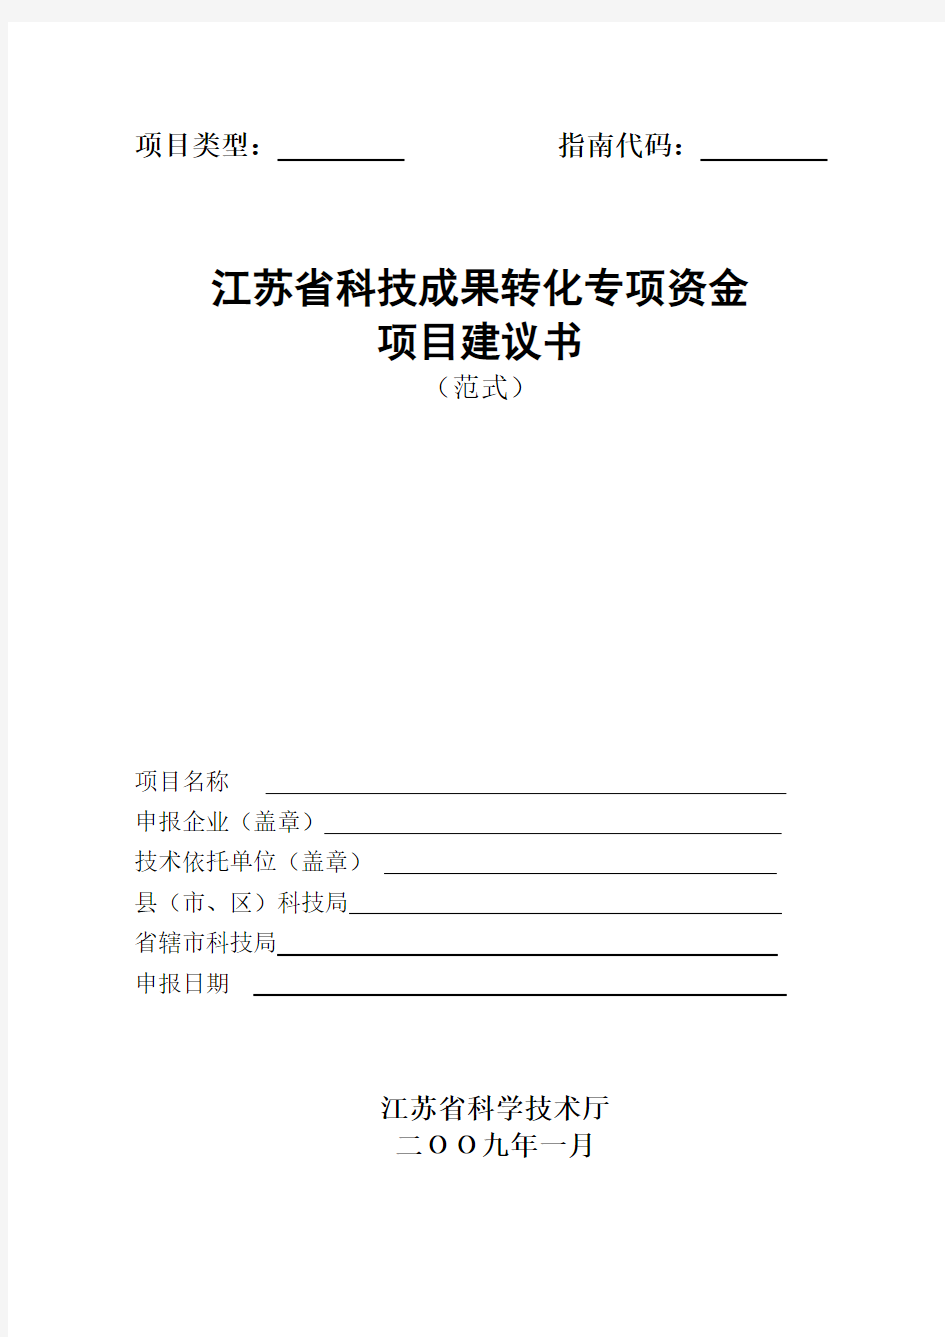 江苏省科技成果转化专项资金项目建议书(范式)